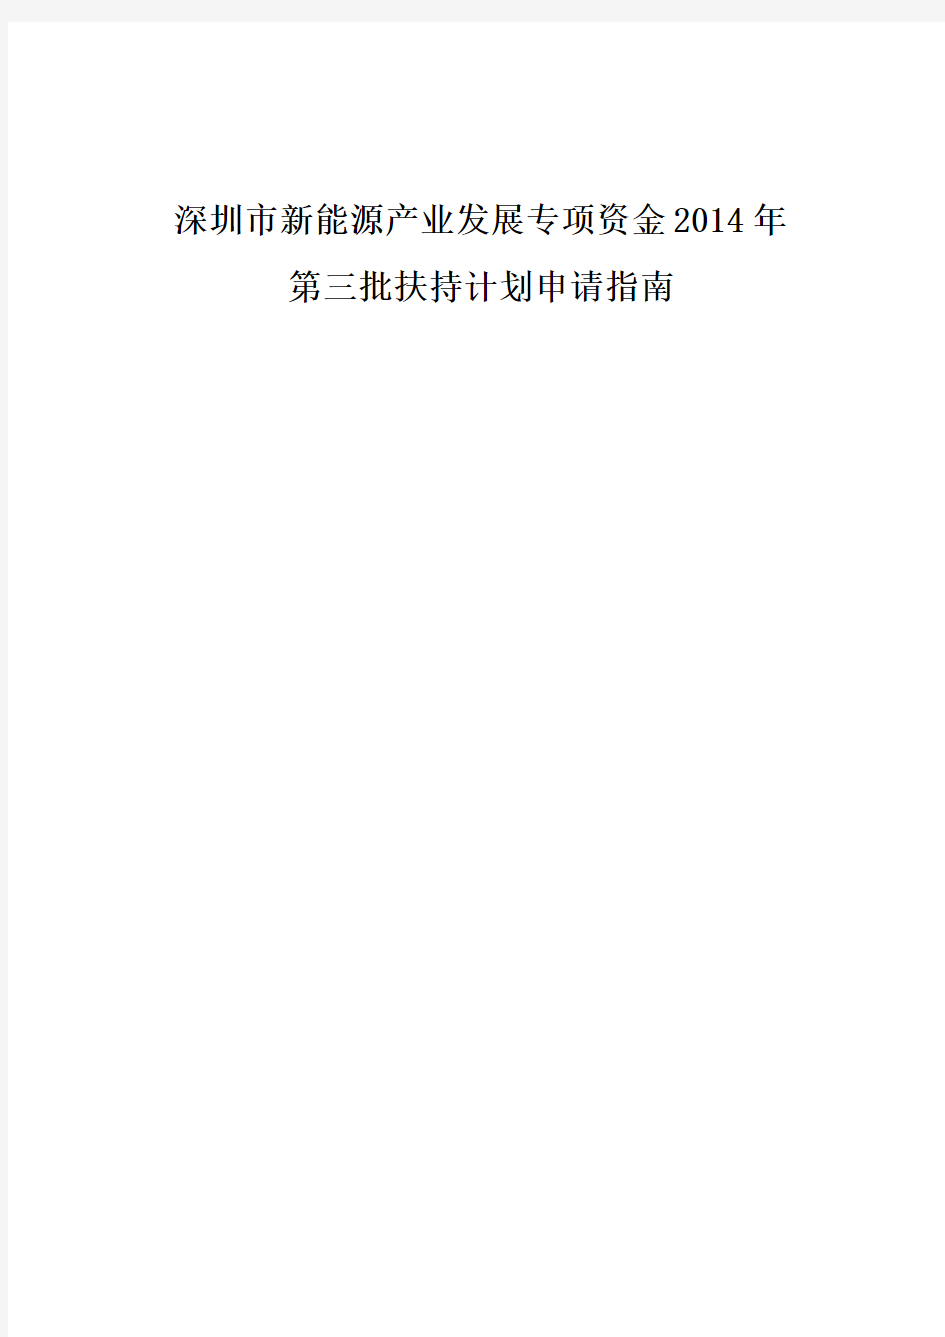 深圳新能源产业发展专项资金2014